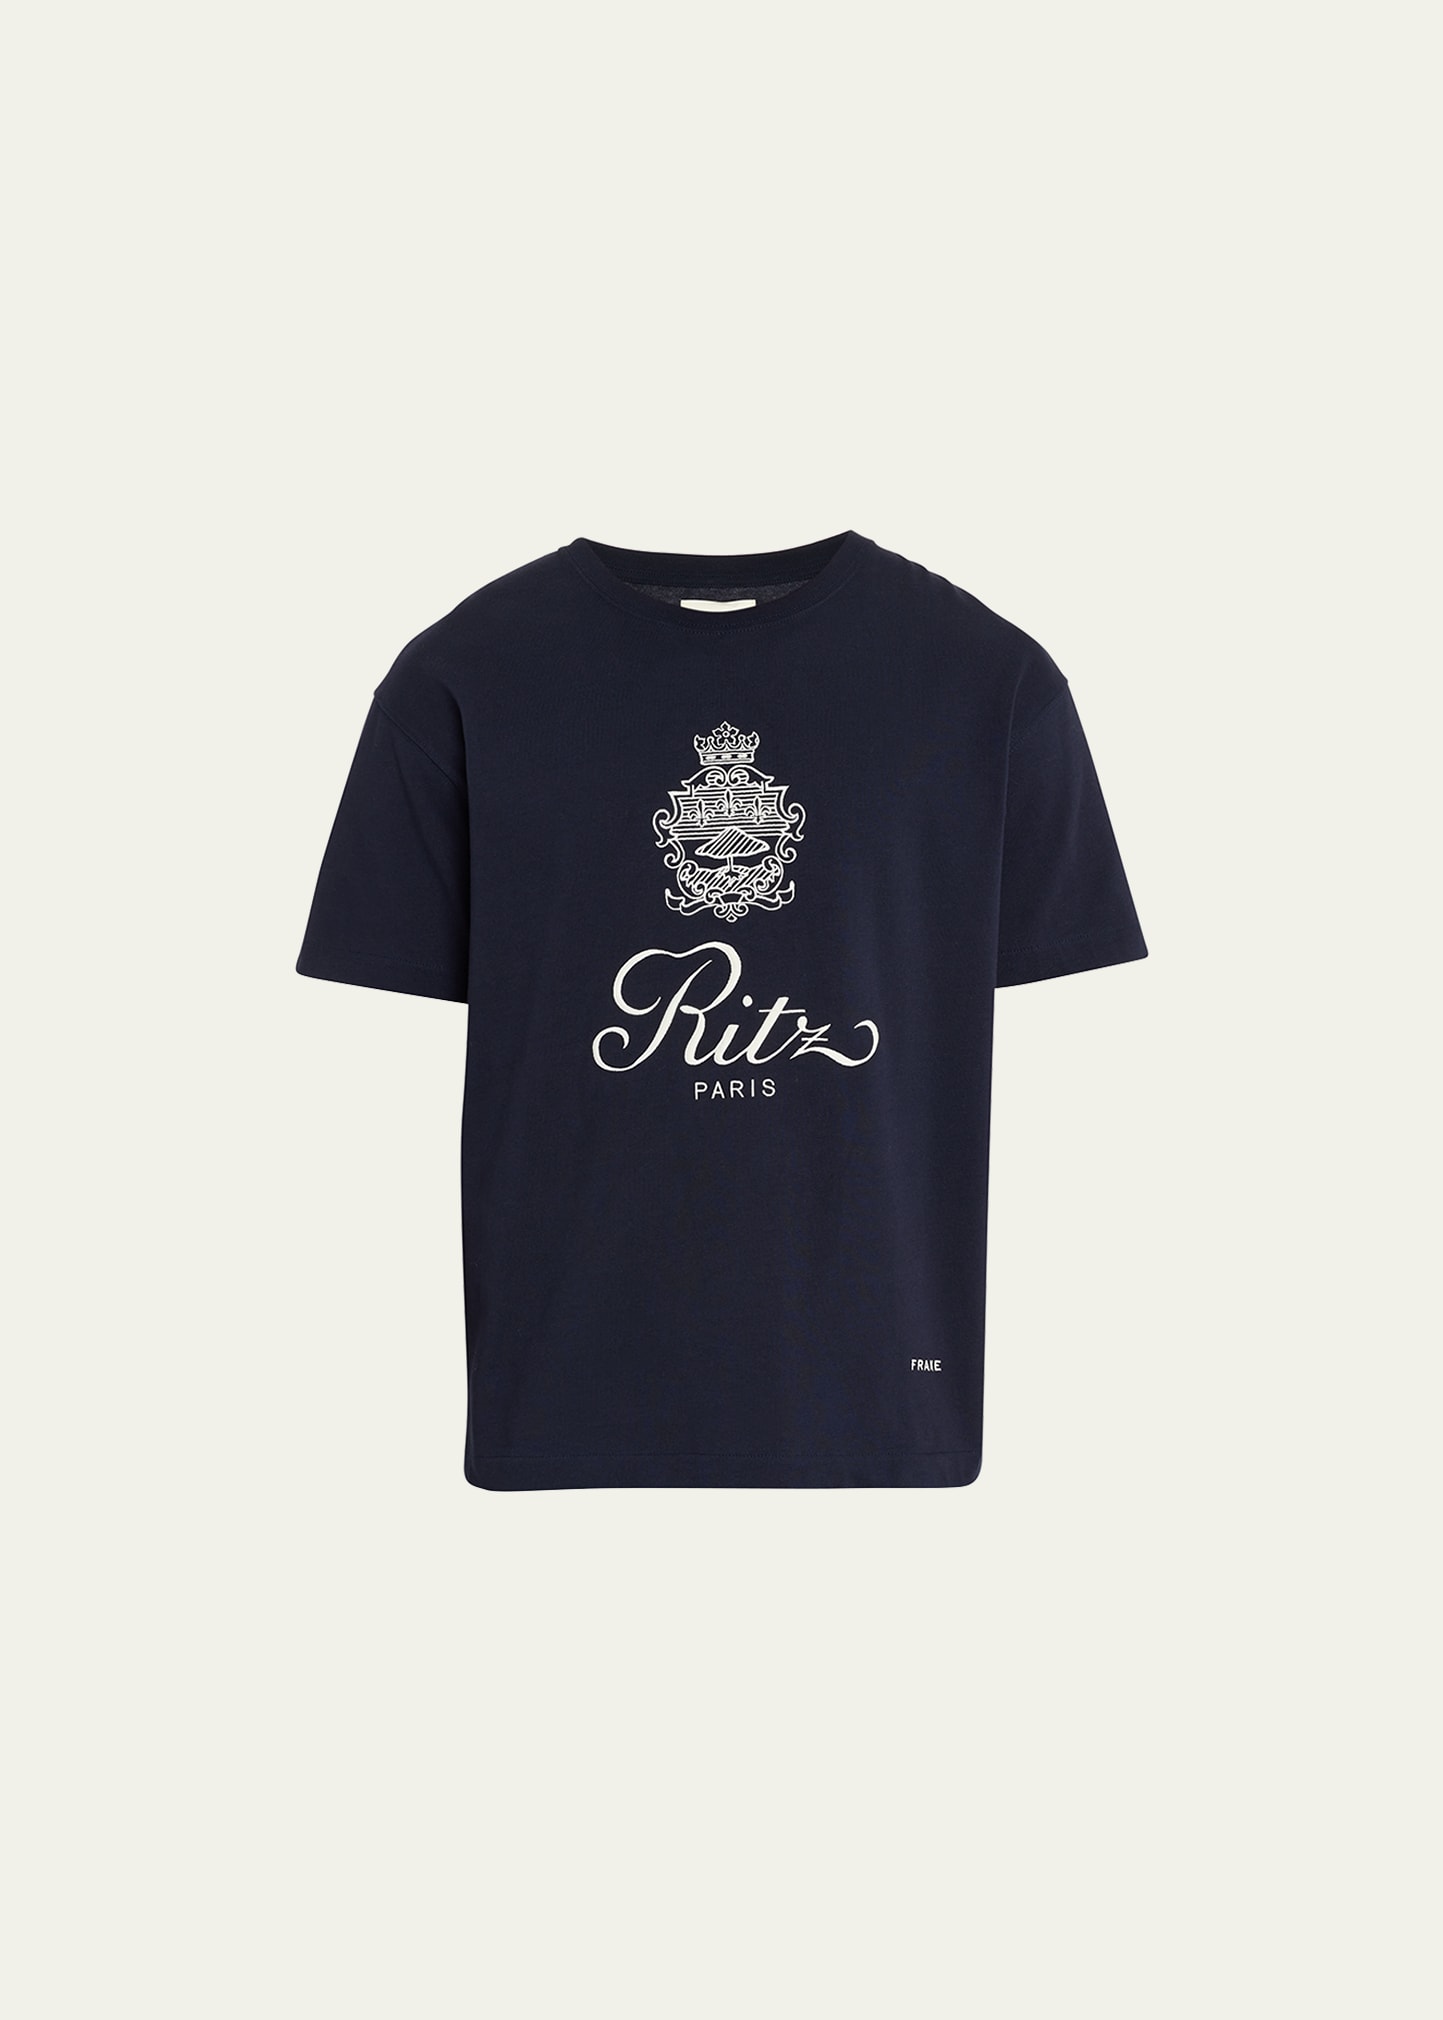 Frame Men's Bordeaux Crest T-shirt In Navy